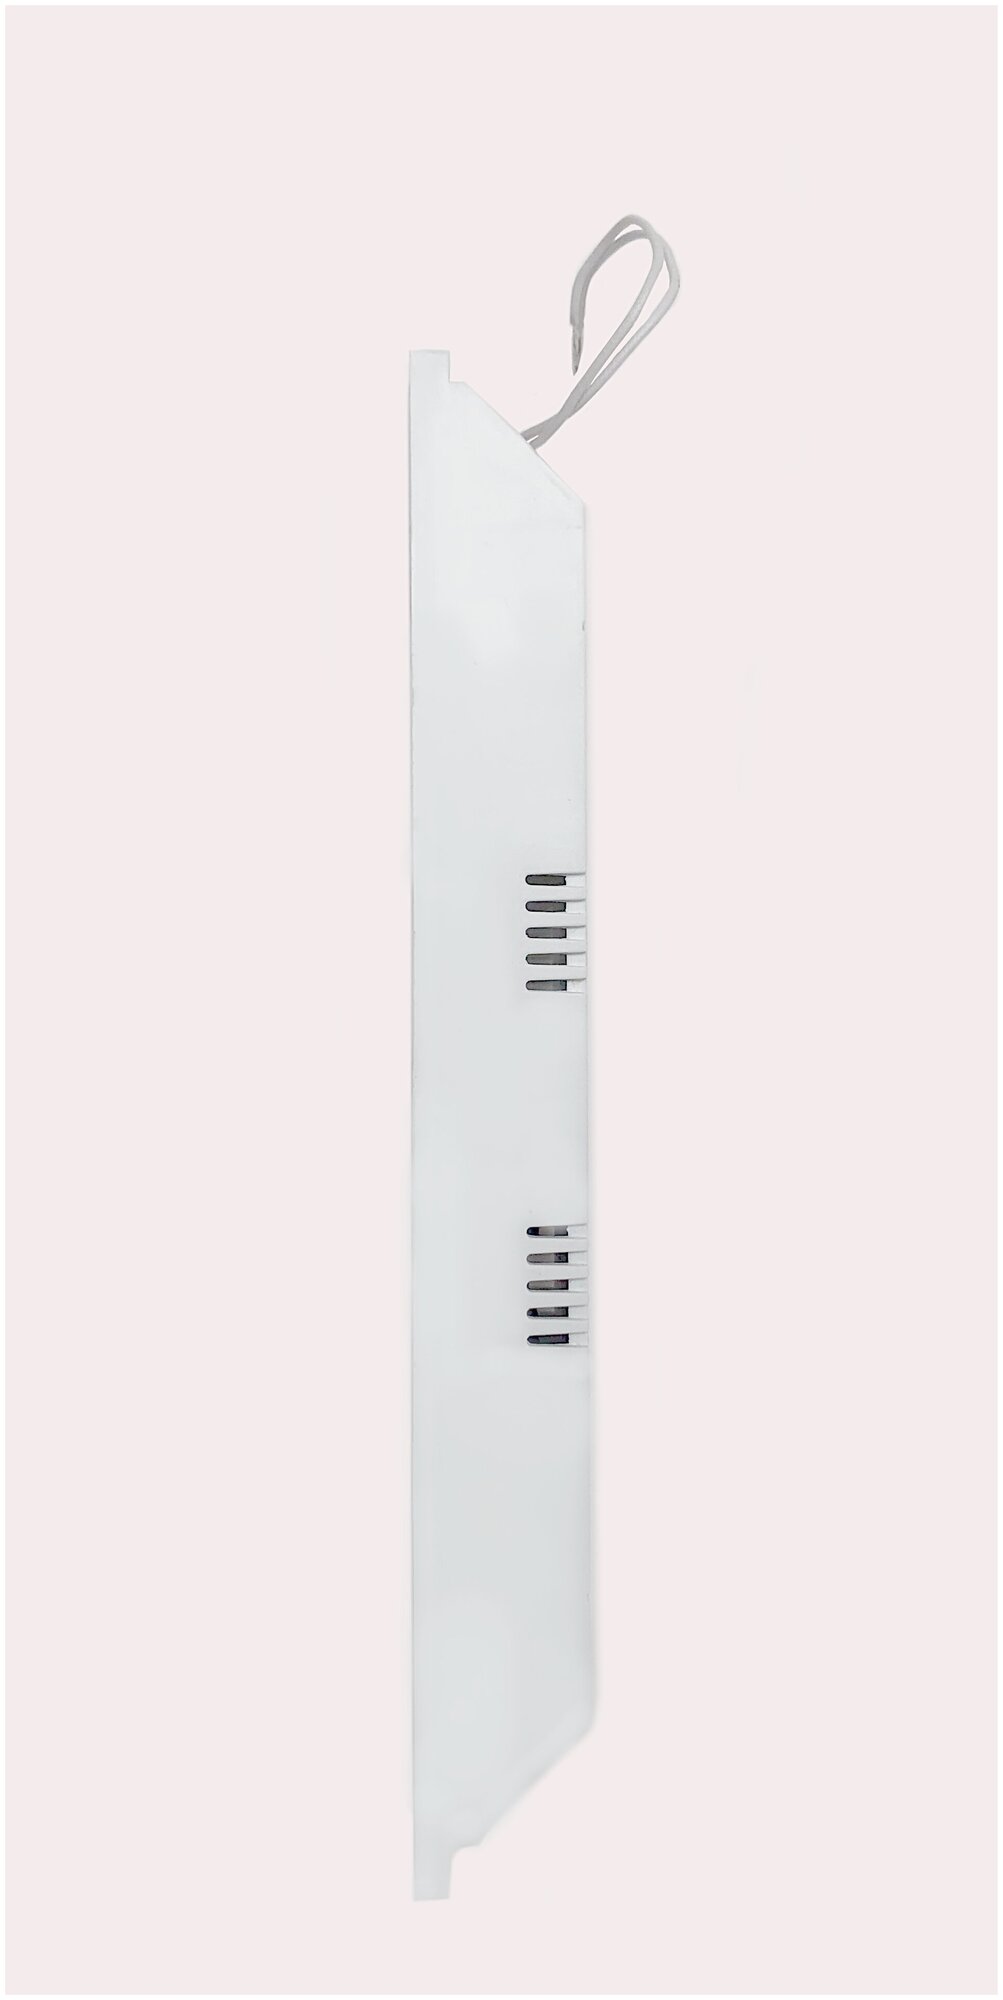 Драйвер для светодиодного светильника мощностью от 5 до 45 Вт, 300 мА, блок питания - фотография № 2